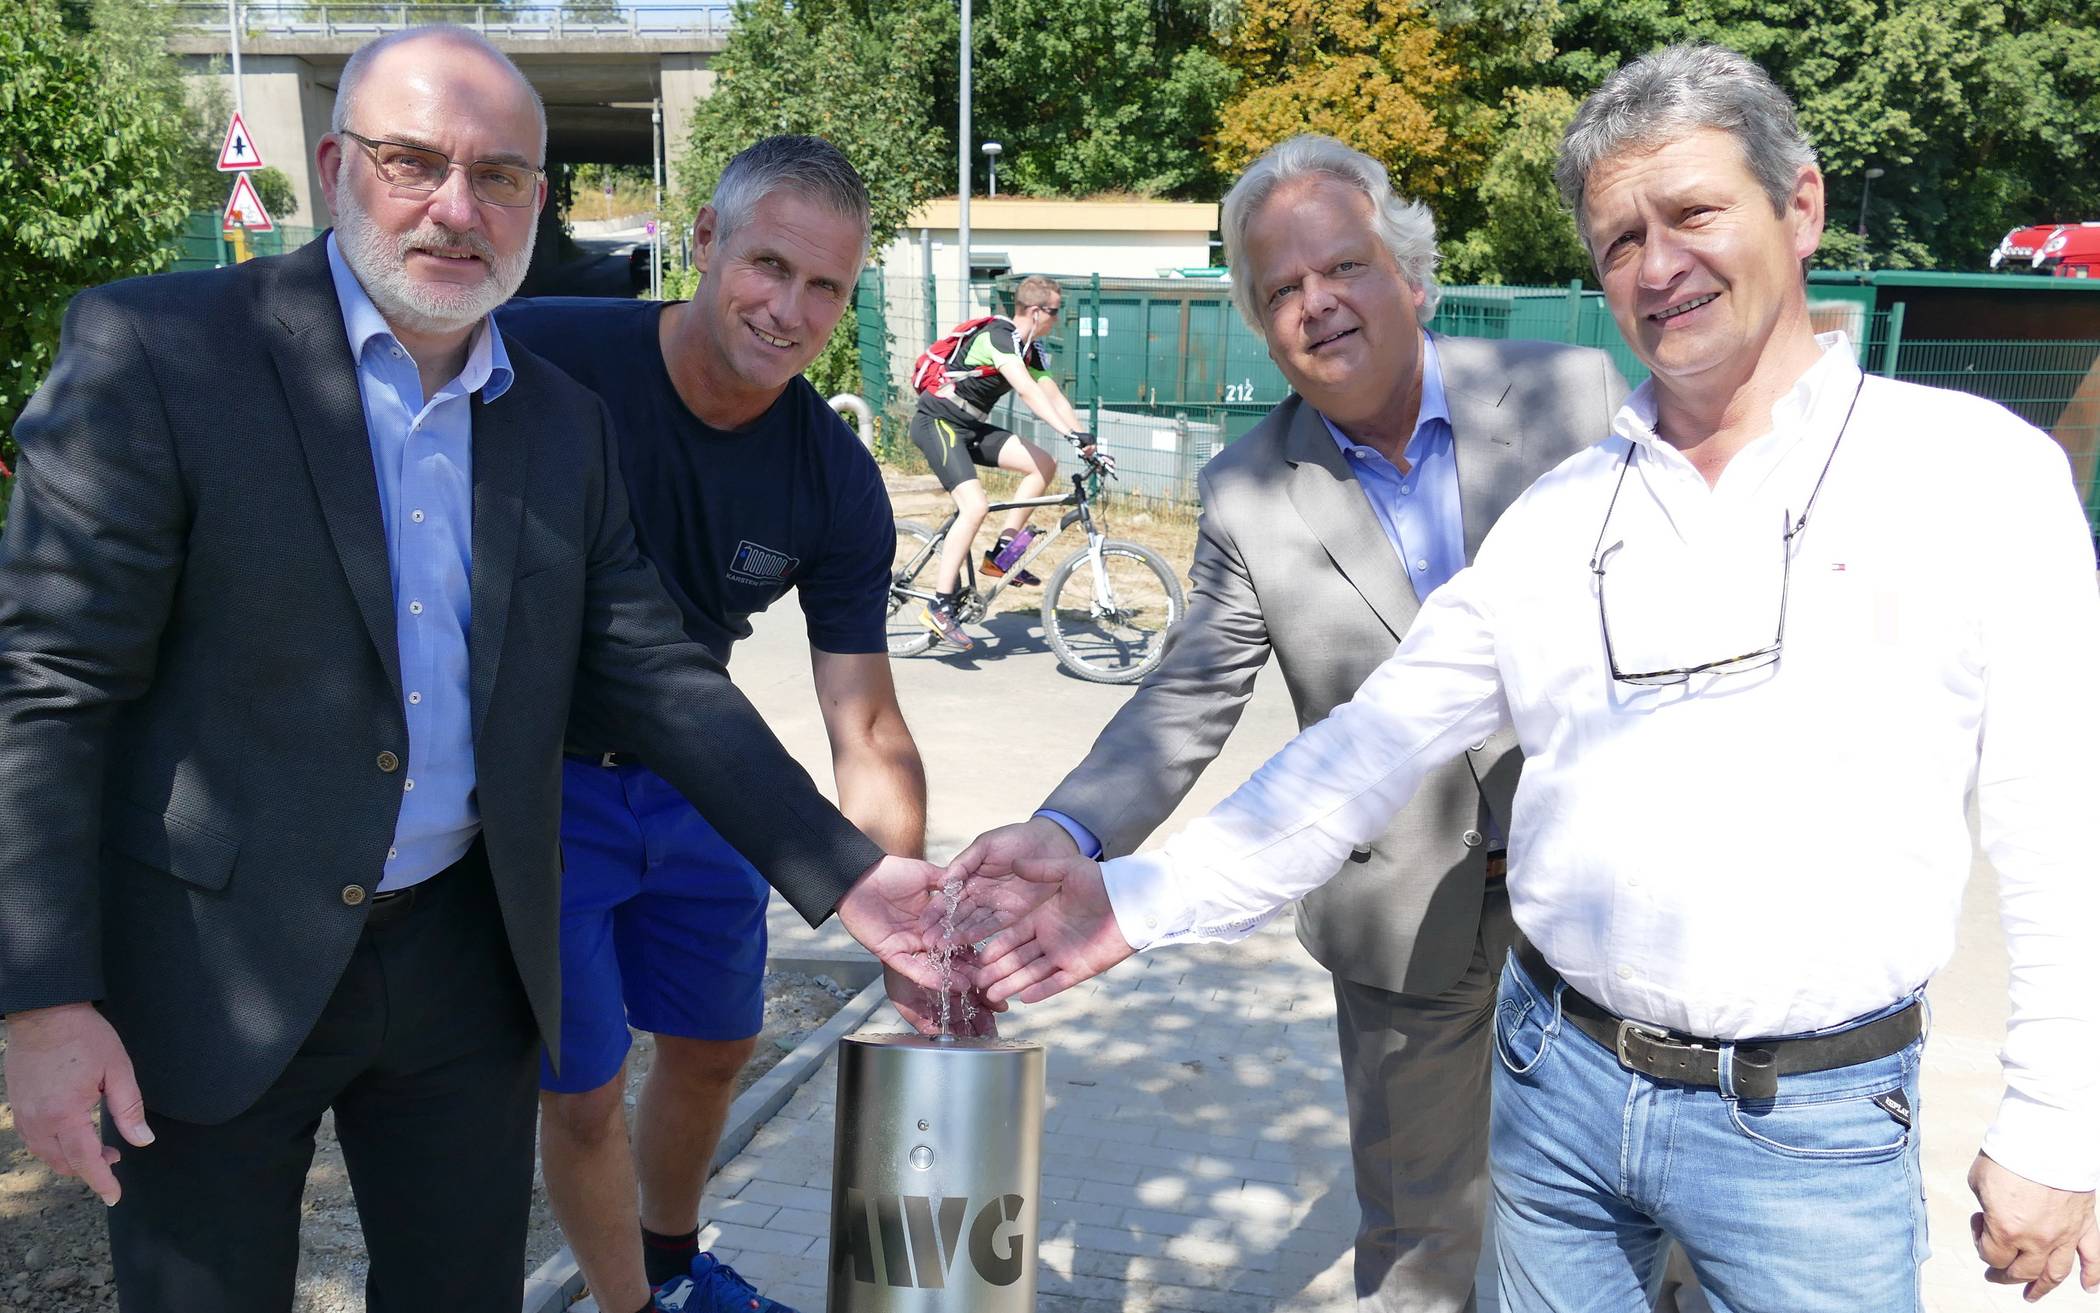  AWG-Geschäftsführer Martin Bickenbach (2.v. rechts) und Conrad Tschersich (li.) freuen sich über den neuen Trinkwasserspender, den Karsten Schulte (2.v.li.) und Burkhard Orf (re.) installiert haben.  